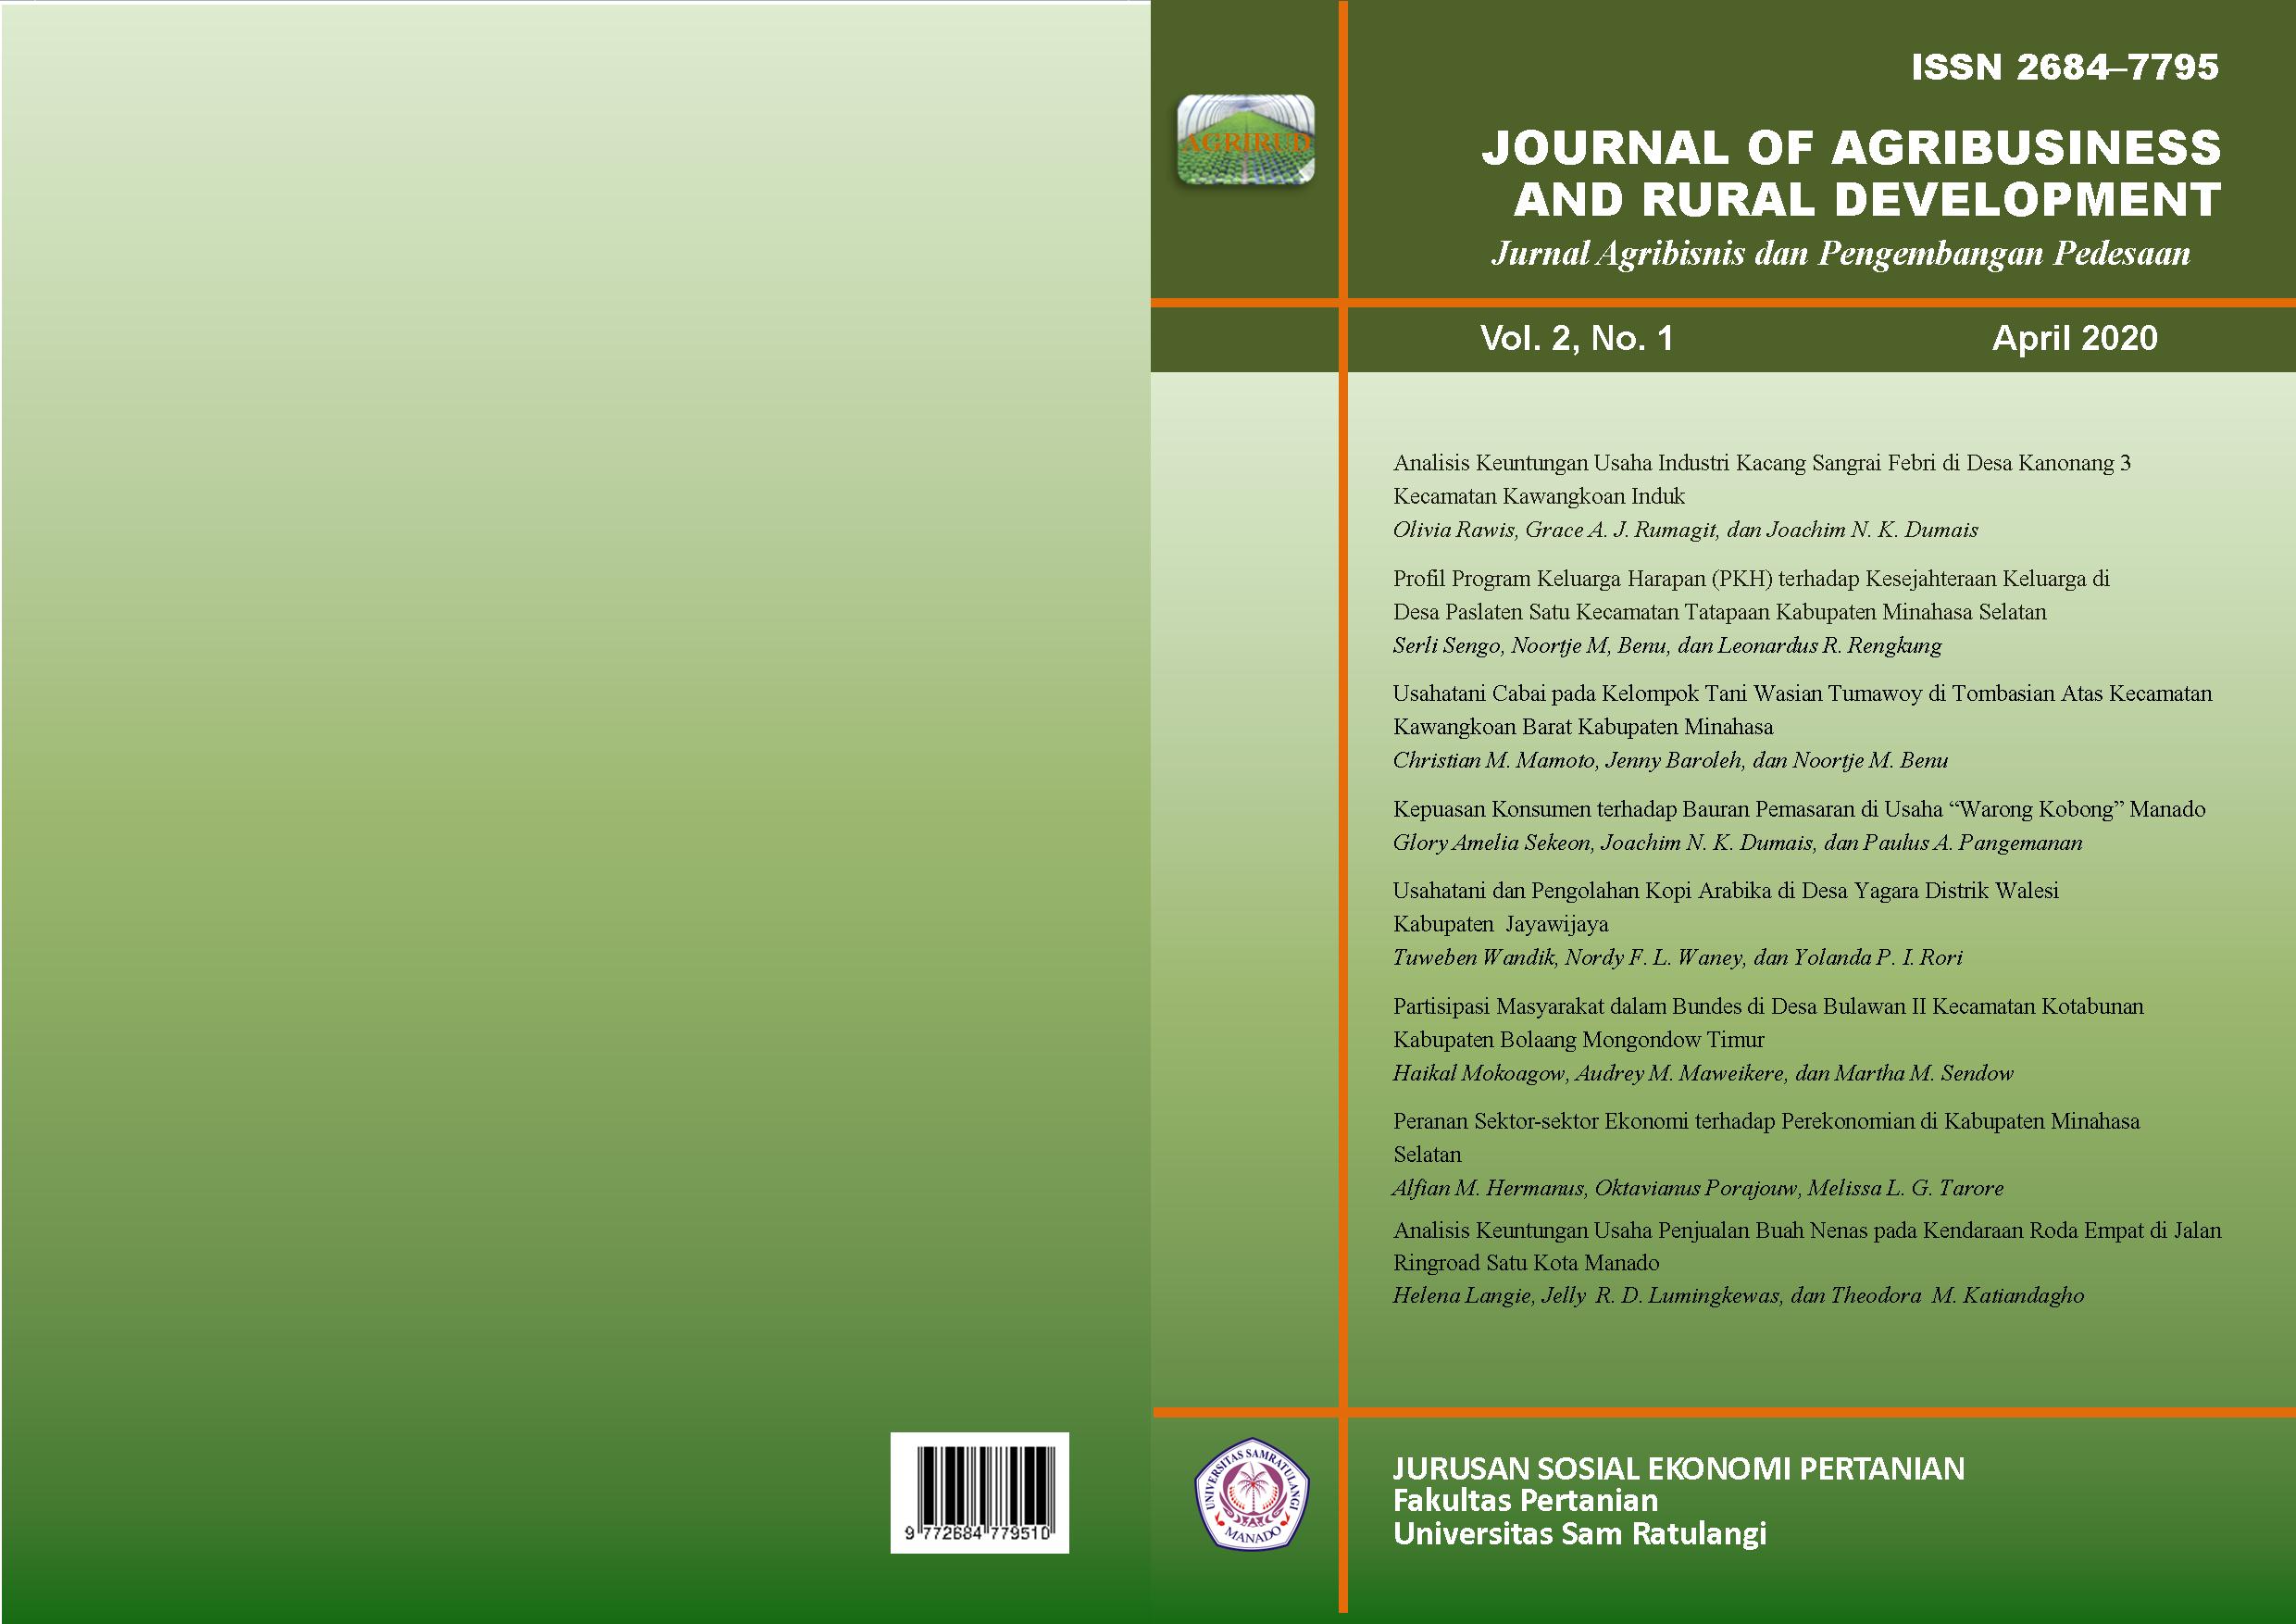 					View Vol. 2 No. 1 (2020): Journal of Agribusiness and Rural Development (Jurnal Agribisnis dan Pengembangan Pedesaan) - April 2020
				